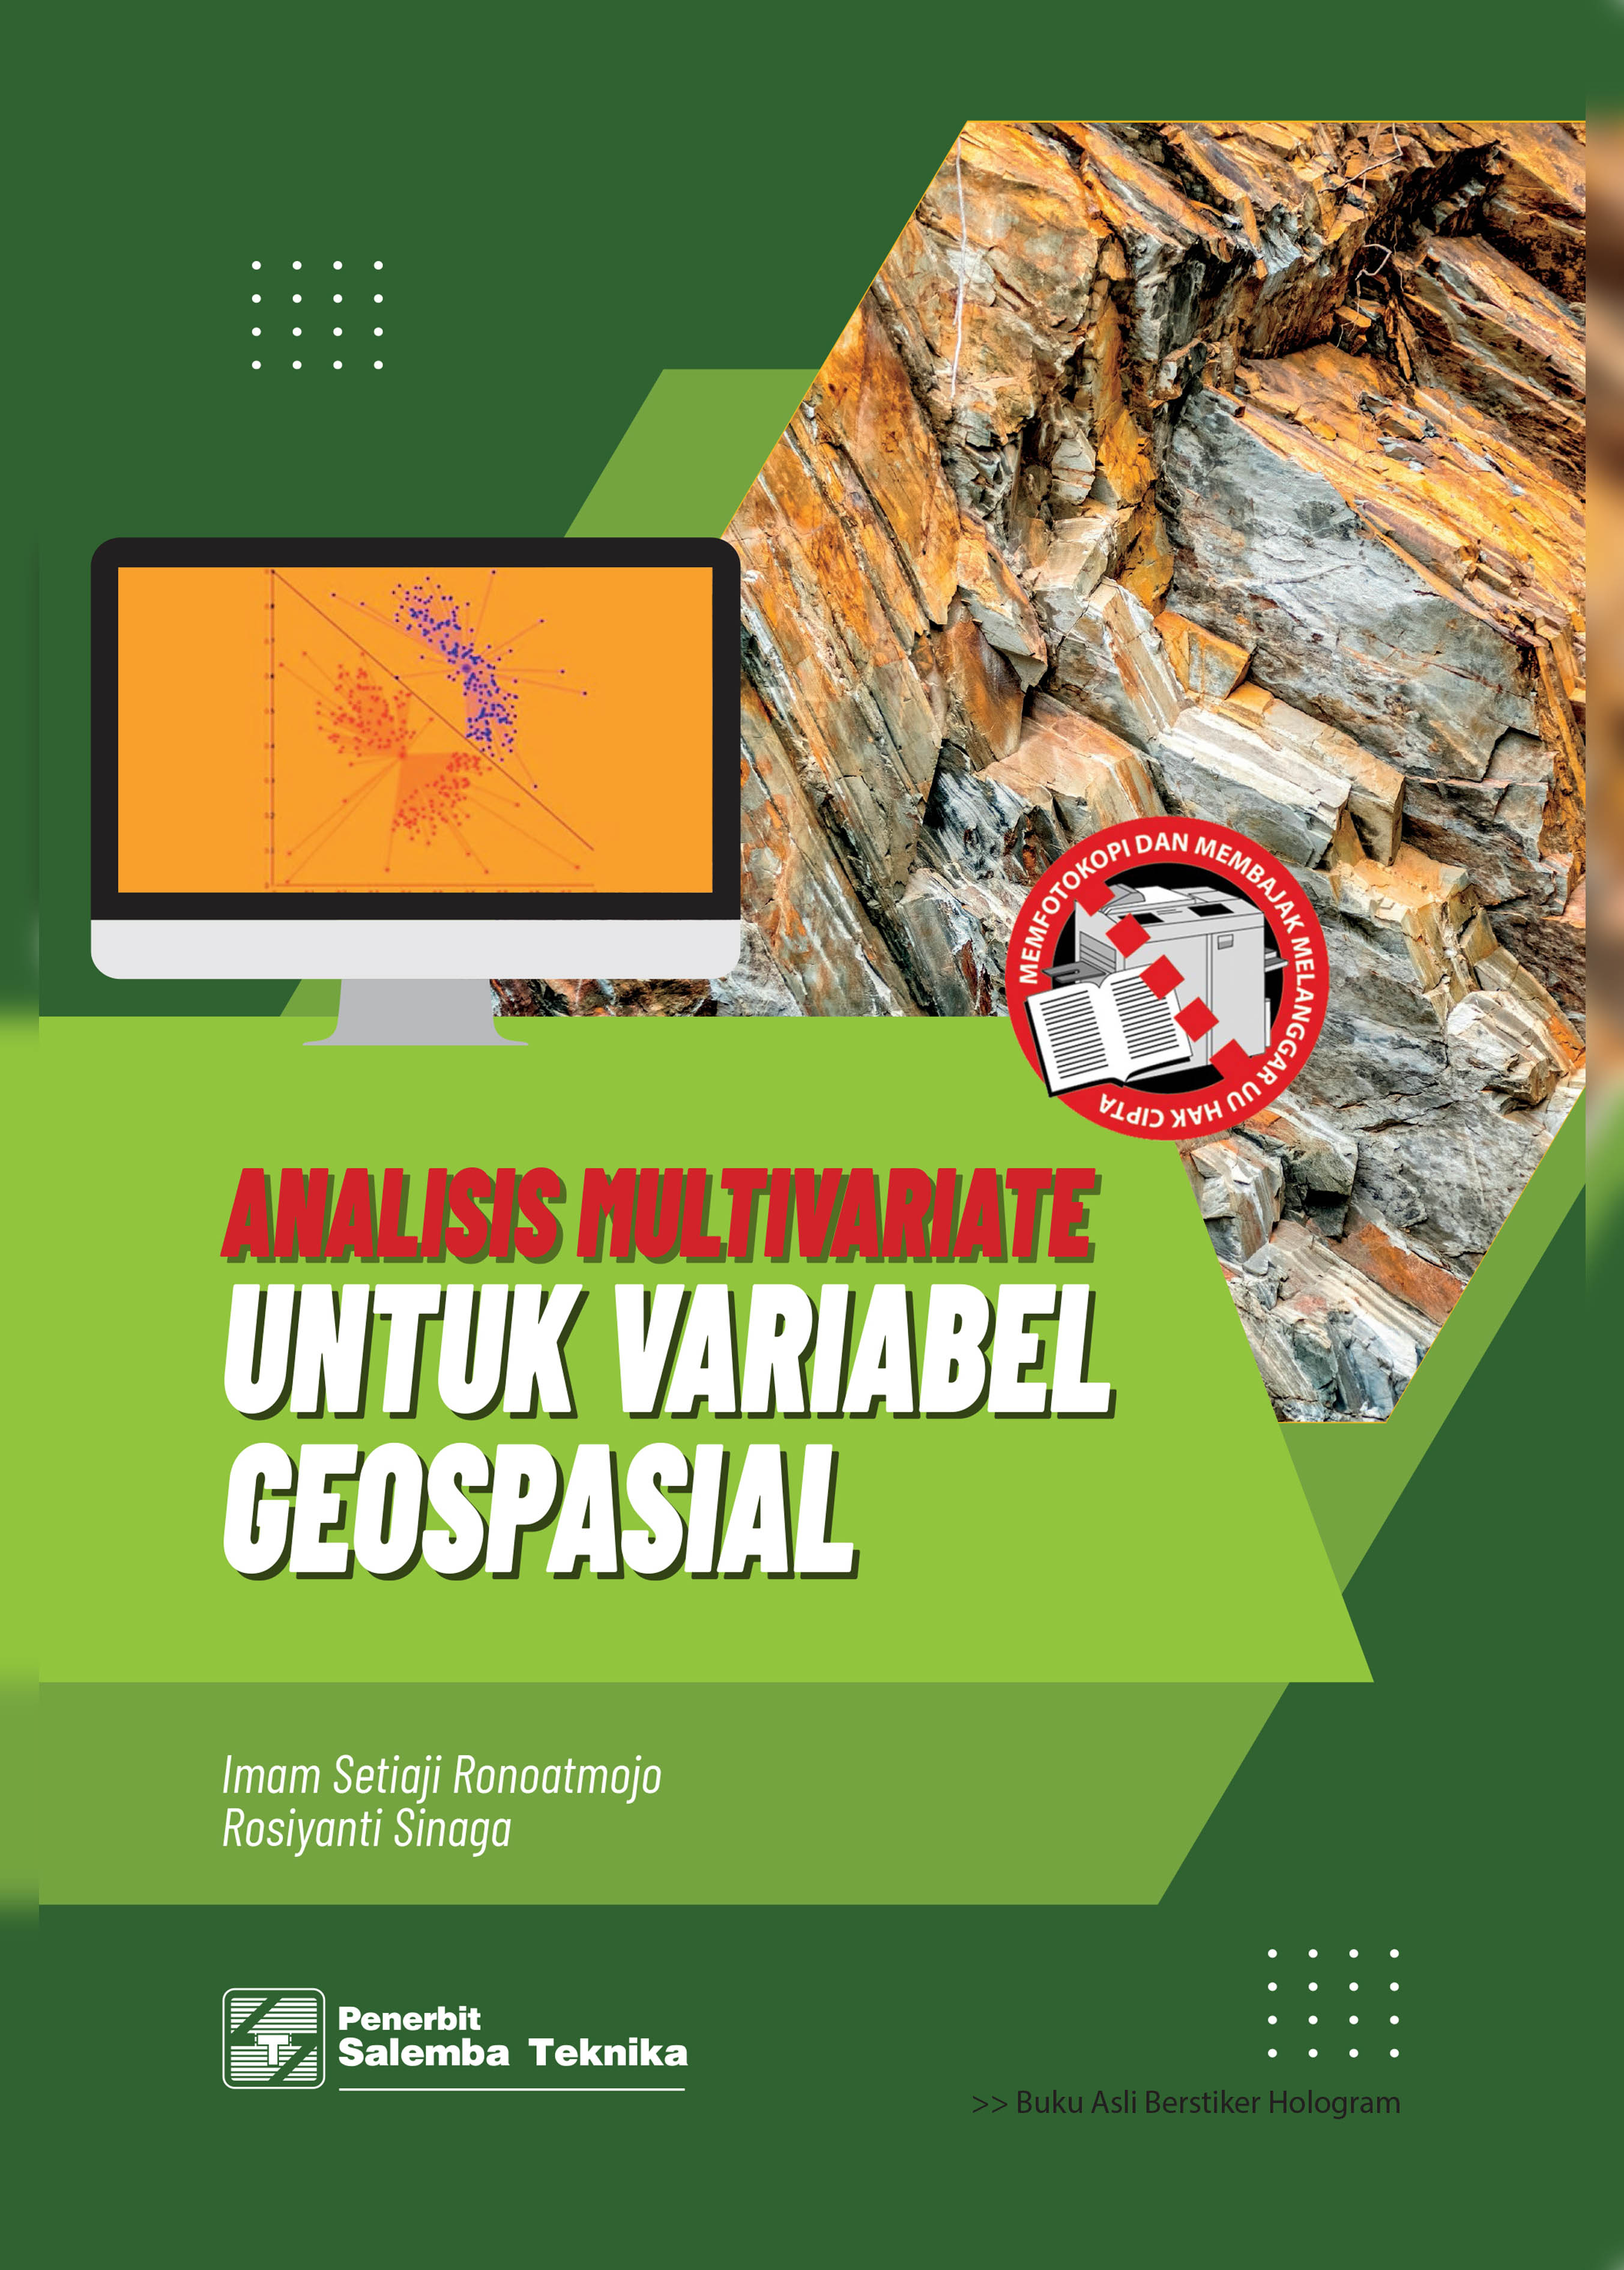 Analisis multivariate untuk variabel geospasial